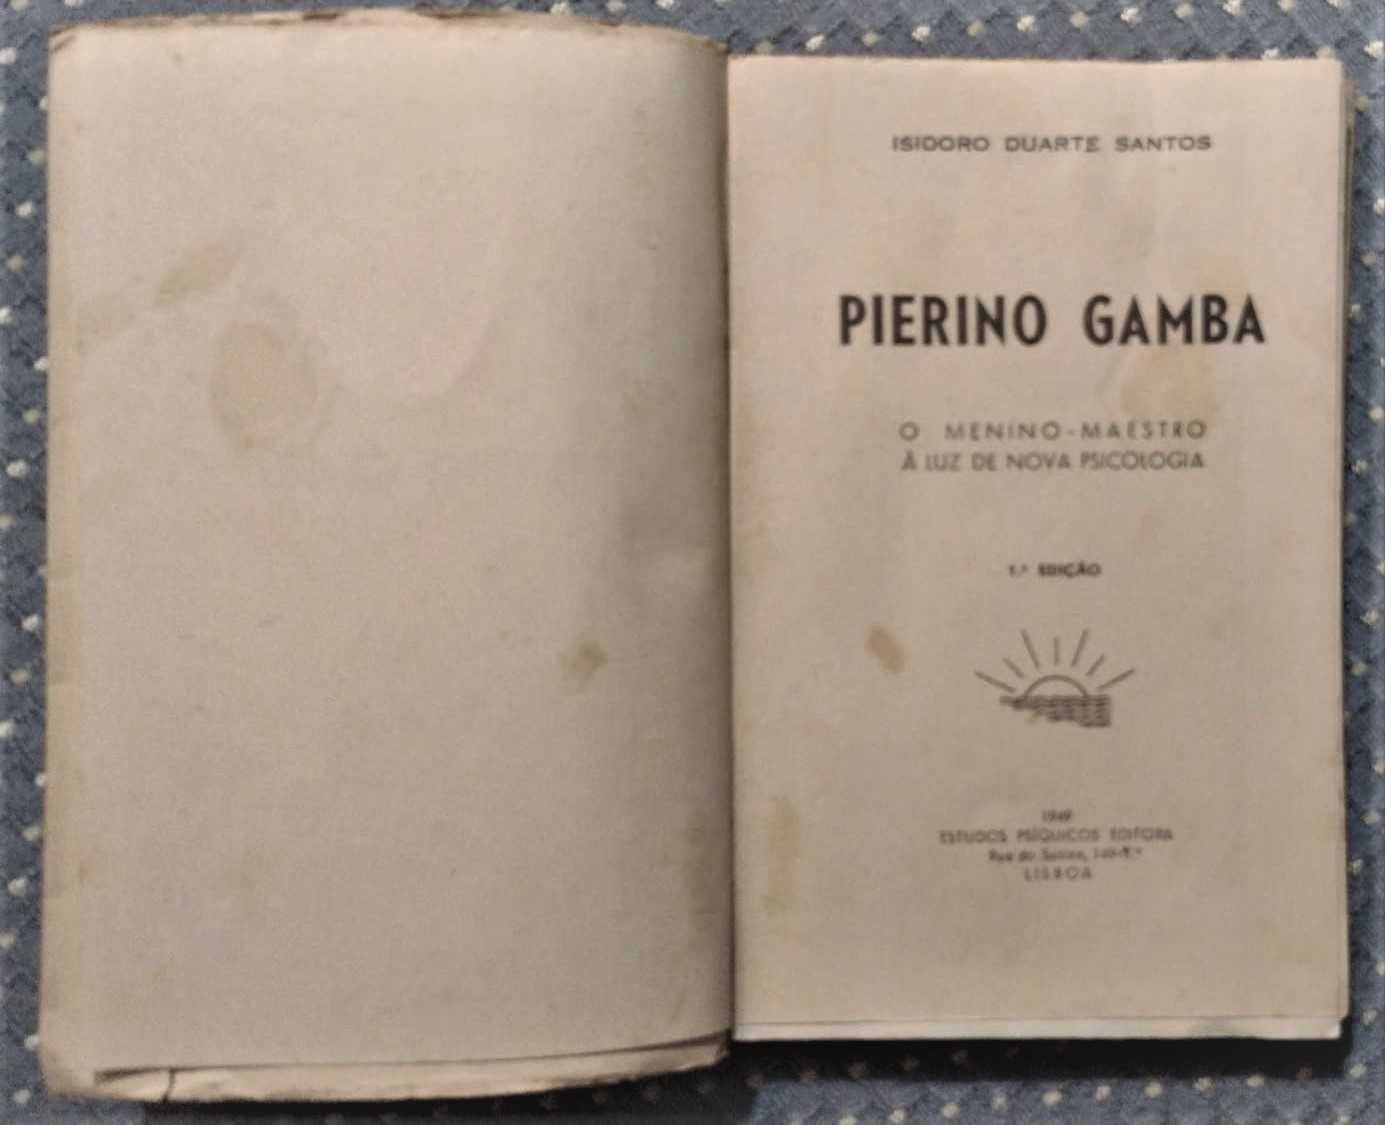 “Pierino Gamba” Isidoro Duarte Santos 1ª Edição 1949 - Ótimo Estado!